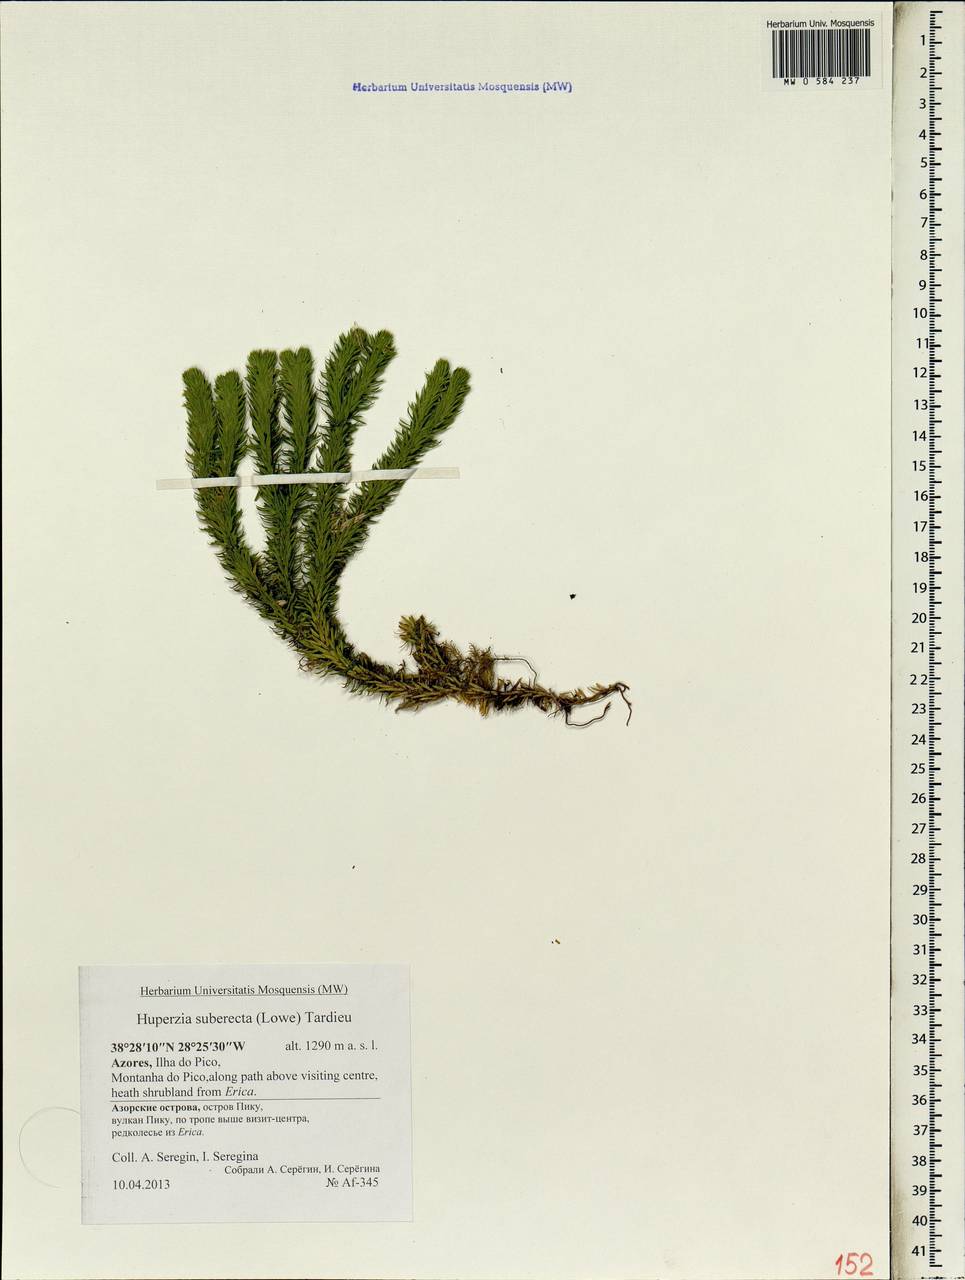 Huperzia suberecta (Lowe) Tardieu, Africa (AFR) (Portugal)